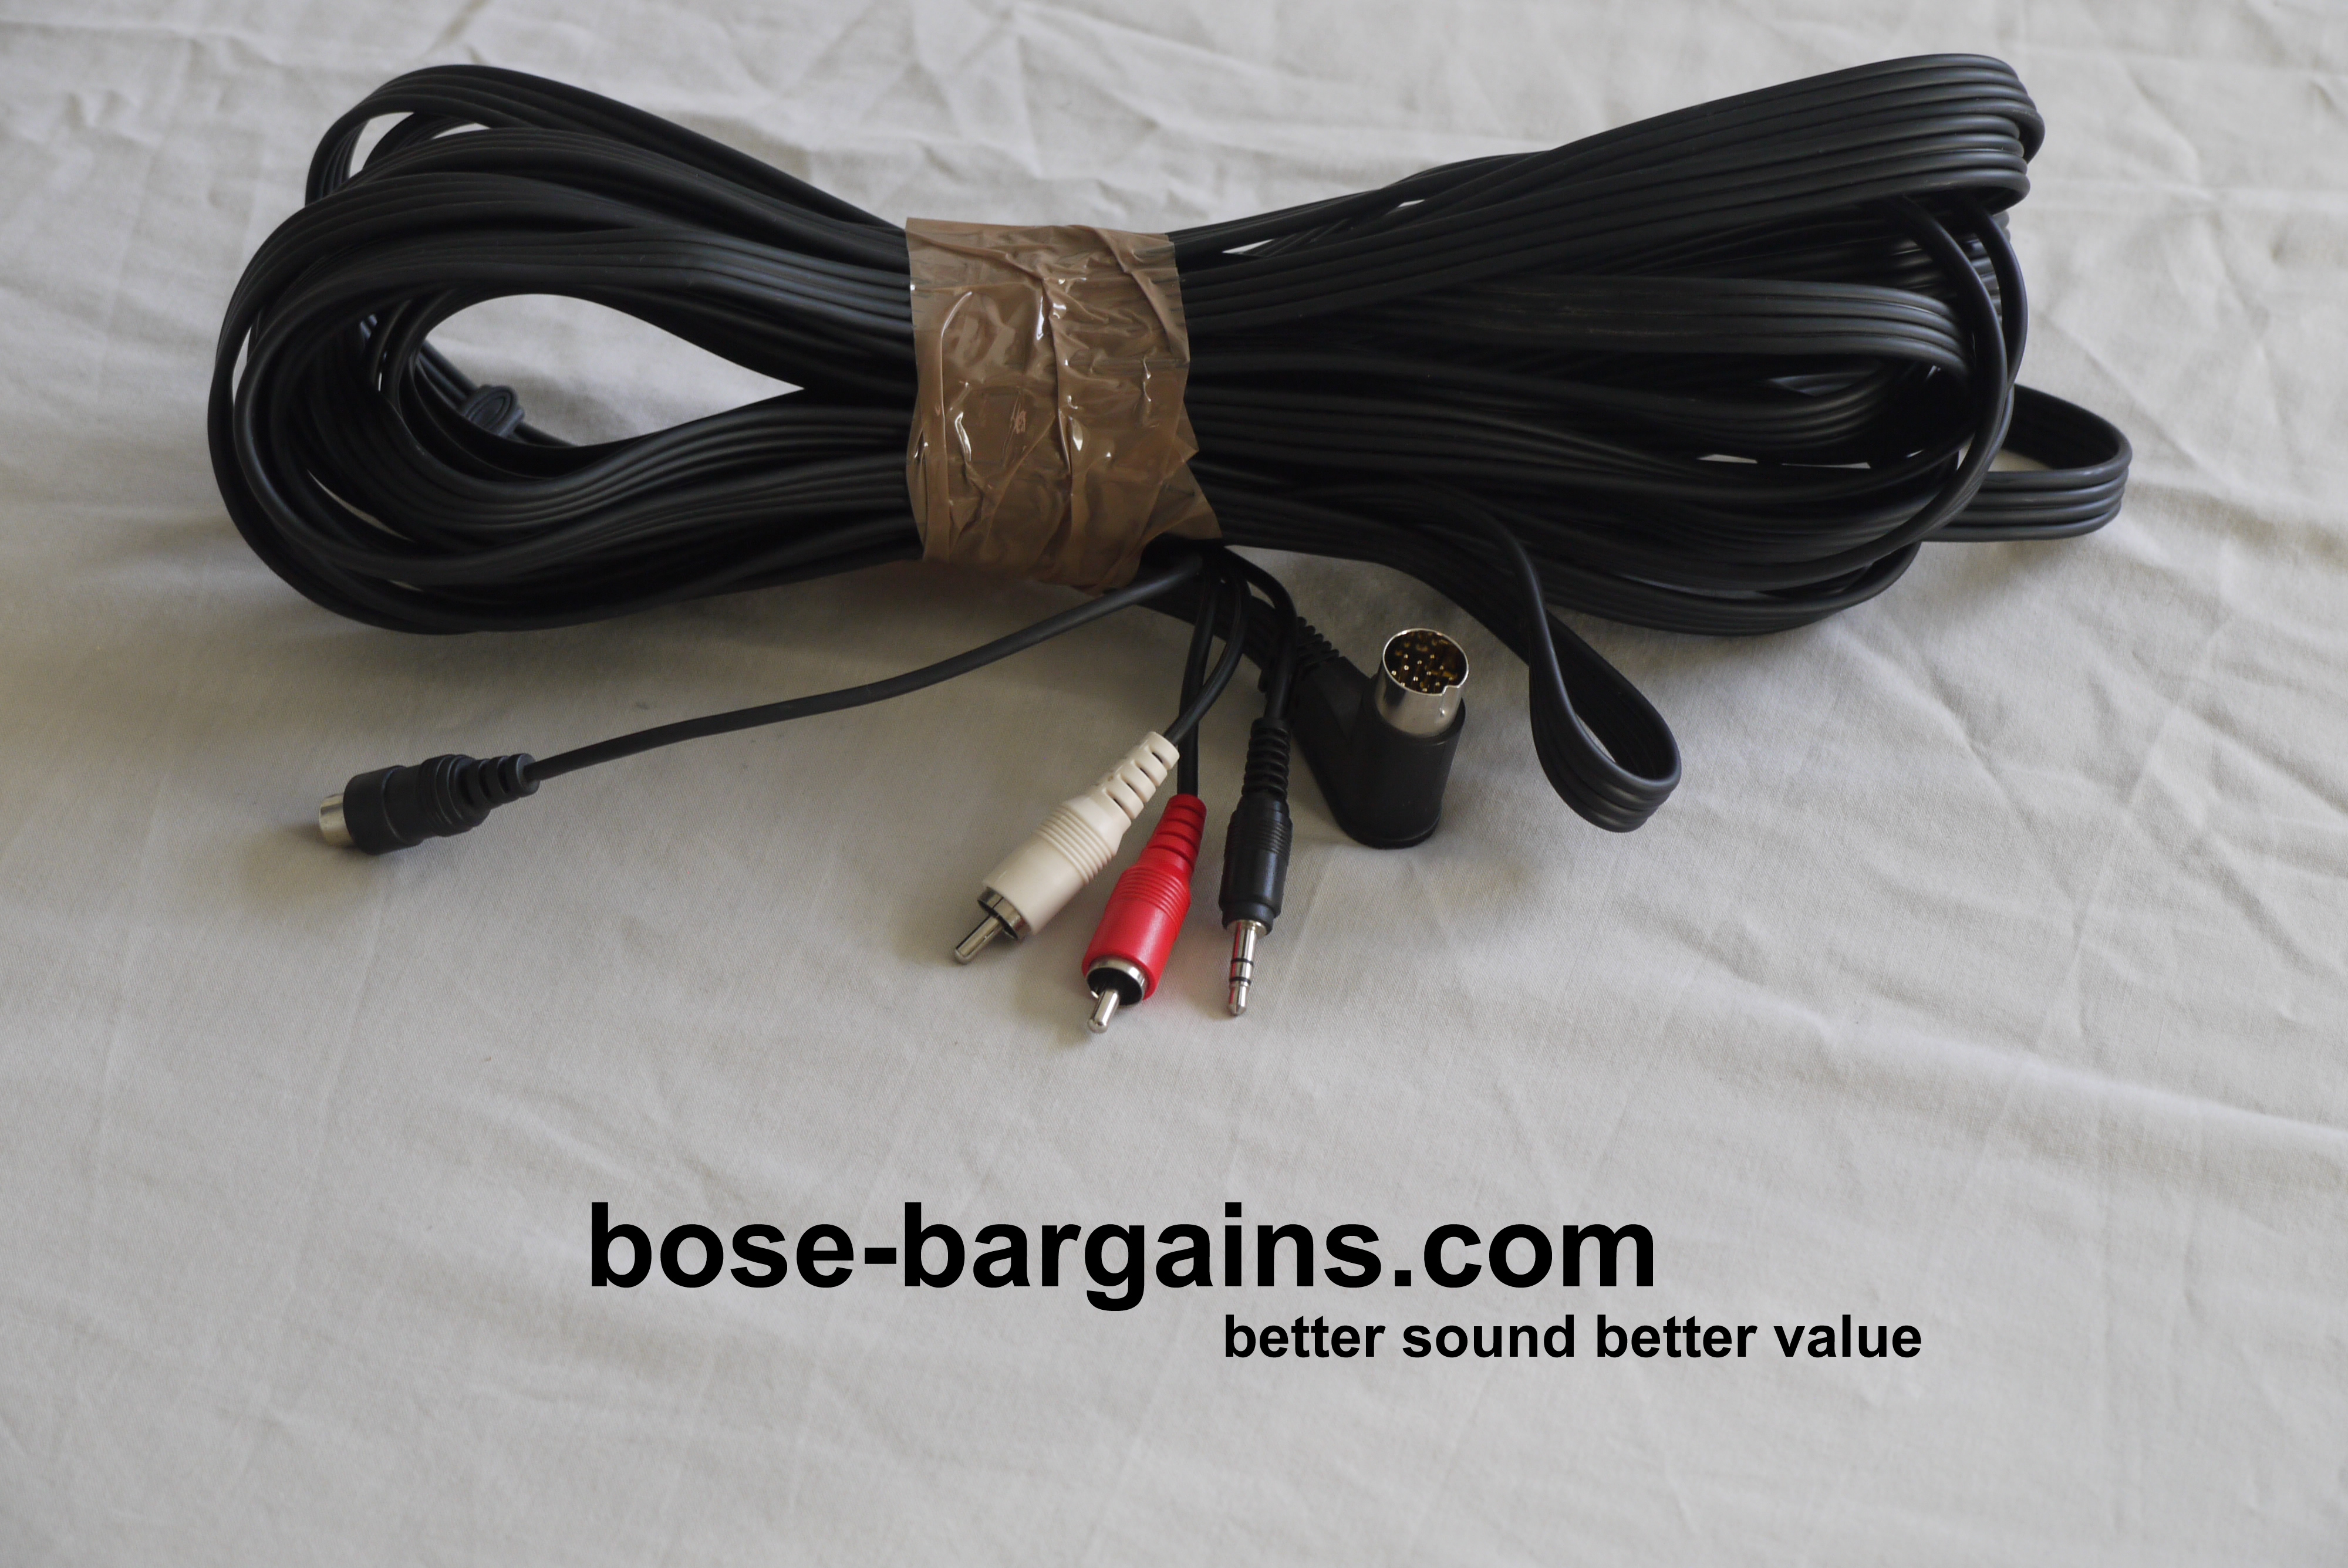 Lifestyle / 12 Black Link Cable - bose-bargains.com